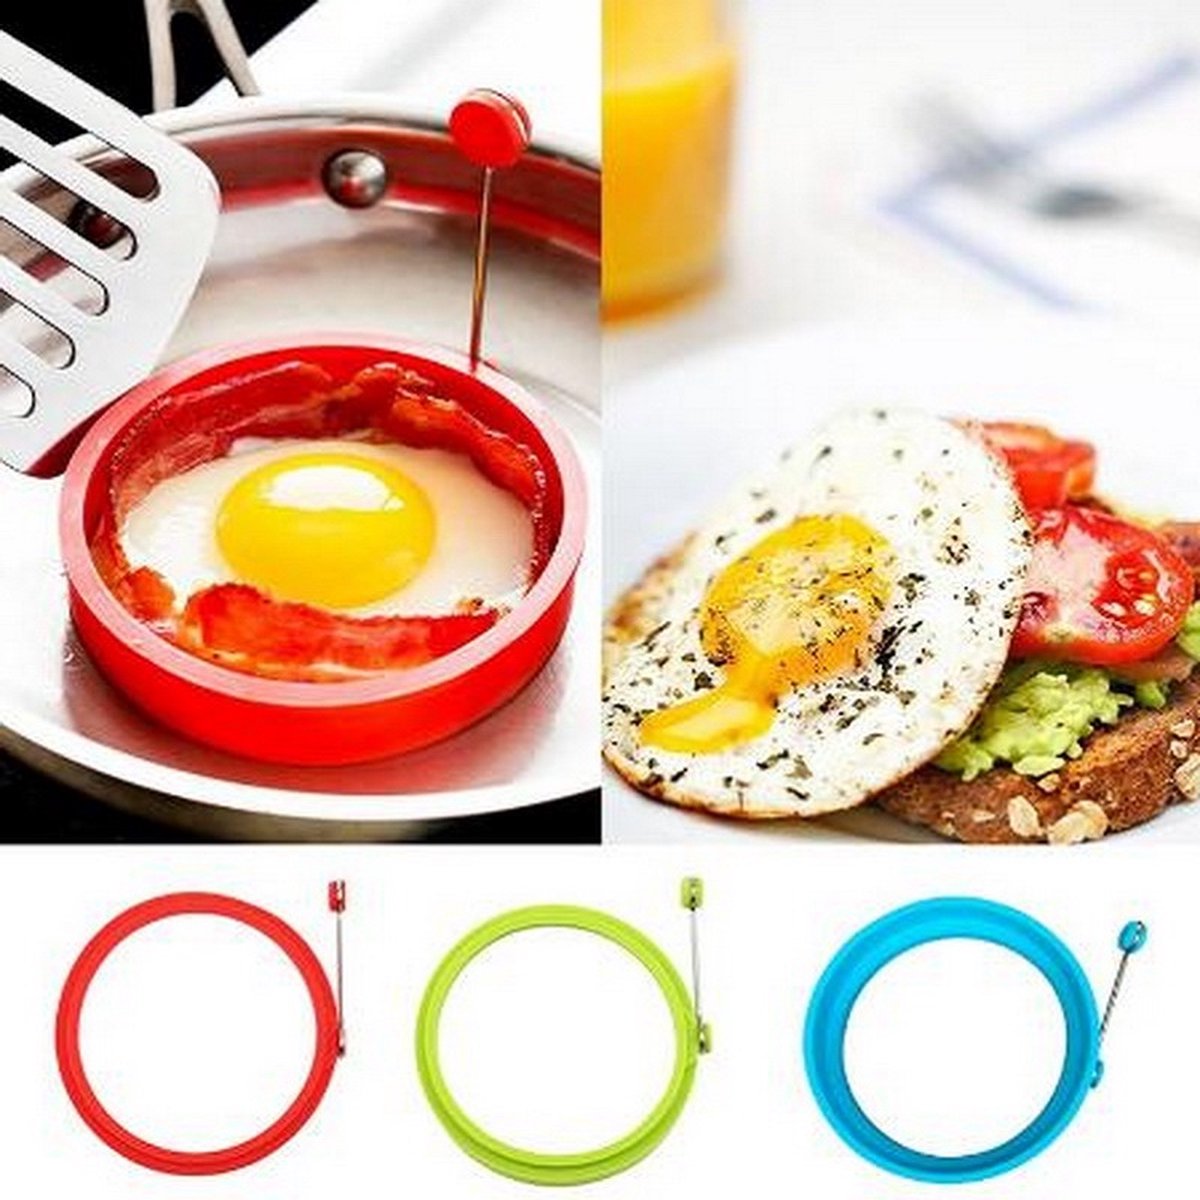 Ei ring Rood - Siliconen Ei-ring - Bakring - Pannekoekenring - Pancake ring - Bakvorm keuken - Pan - Ei Bakvorm - Bakaccesoire